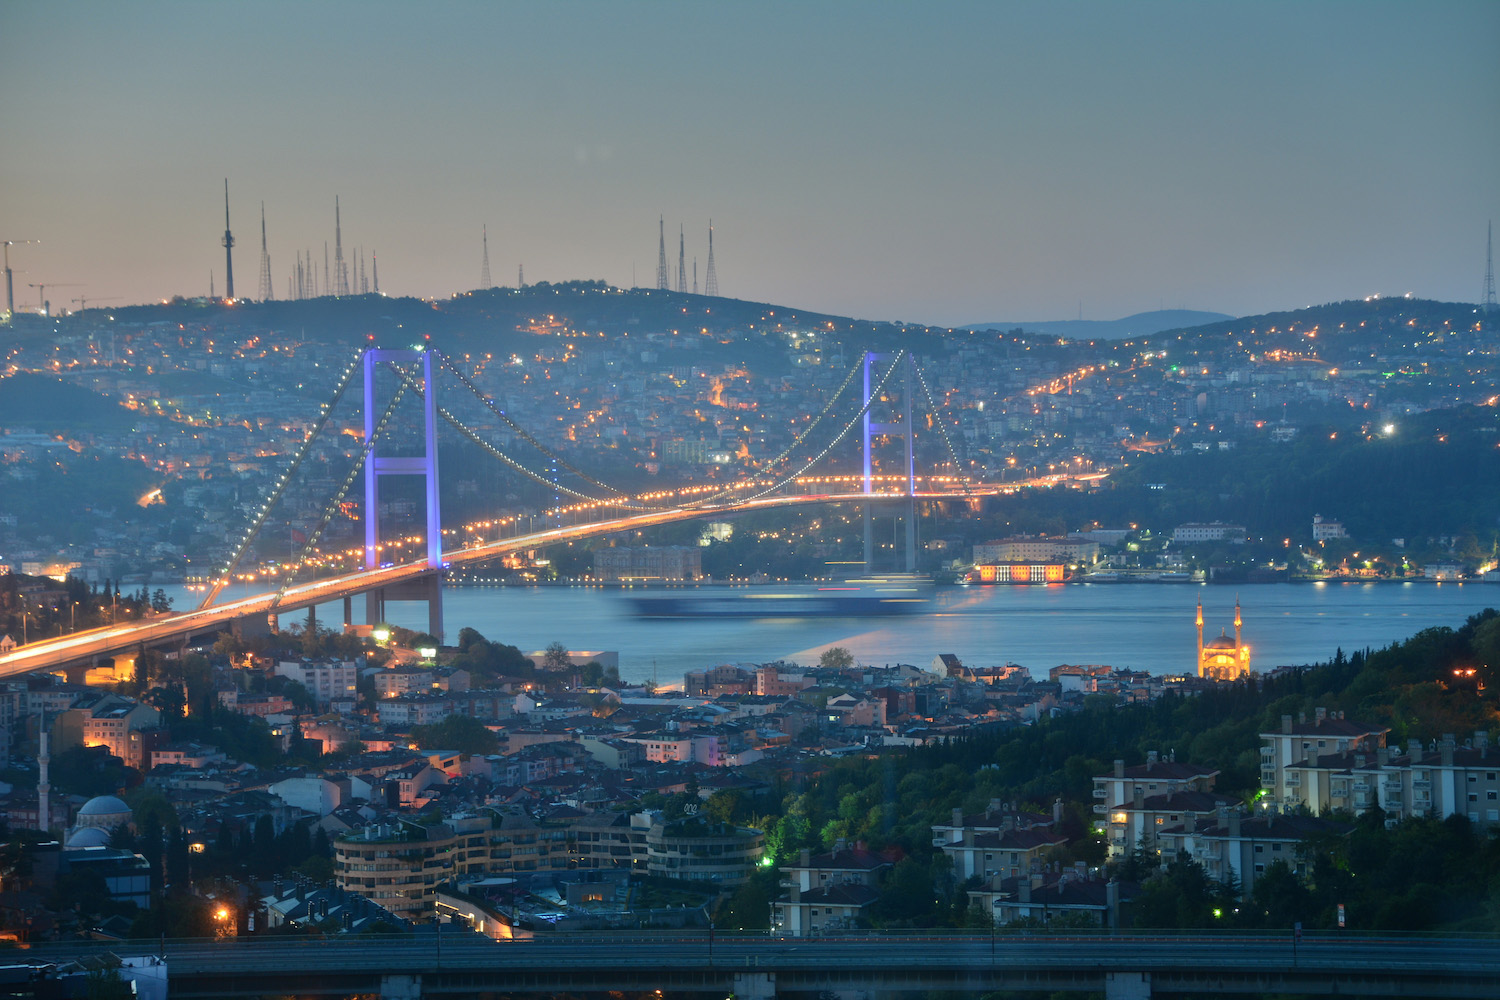 Bosphorous Bridge in Istanbul